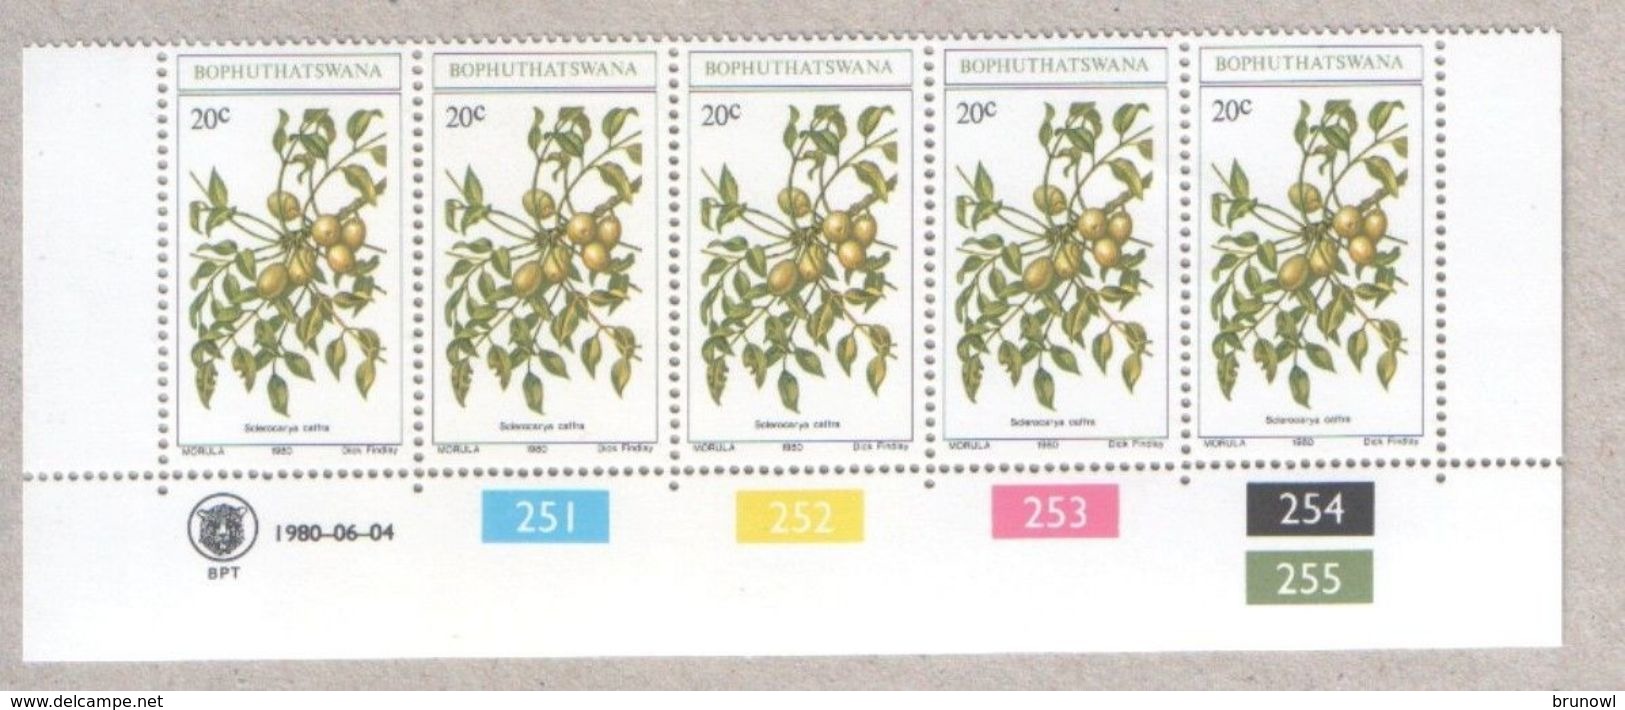 Bophuthatswana Blocks Of MNH Stamps 1980 Fruits - Bophuthatswana